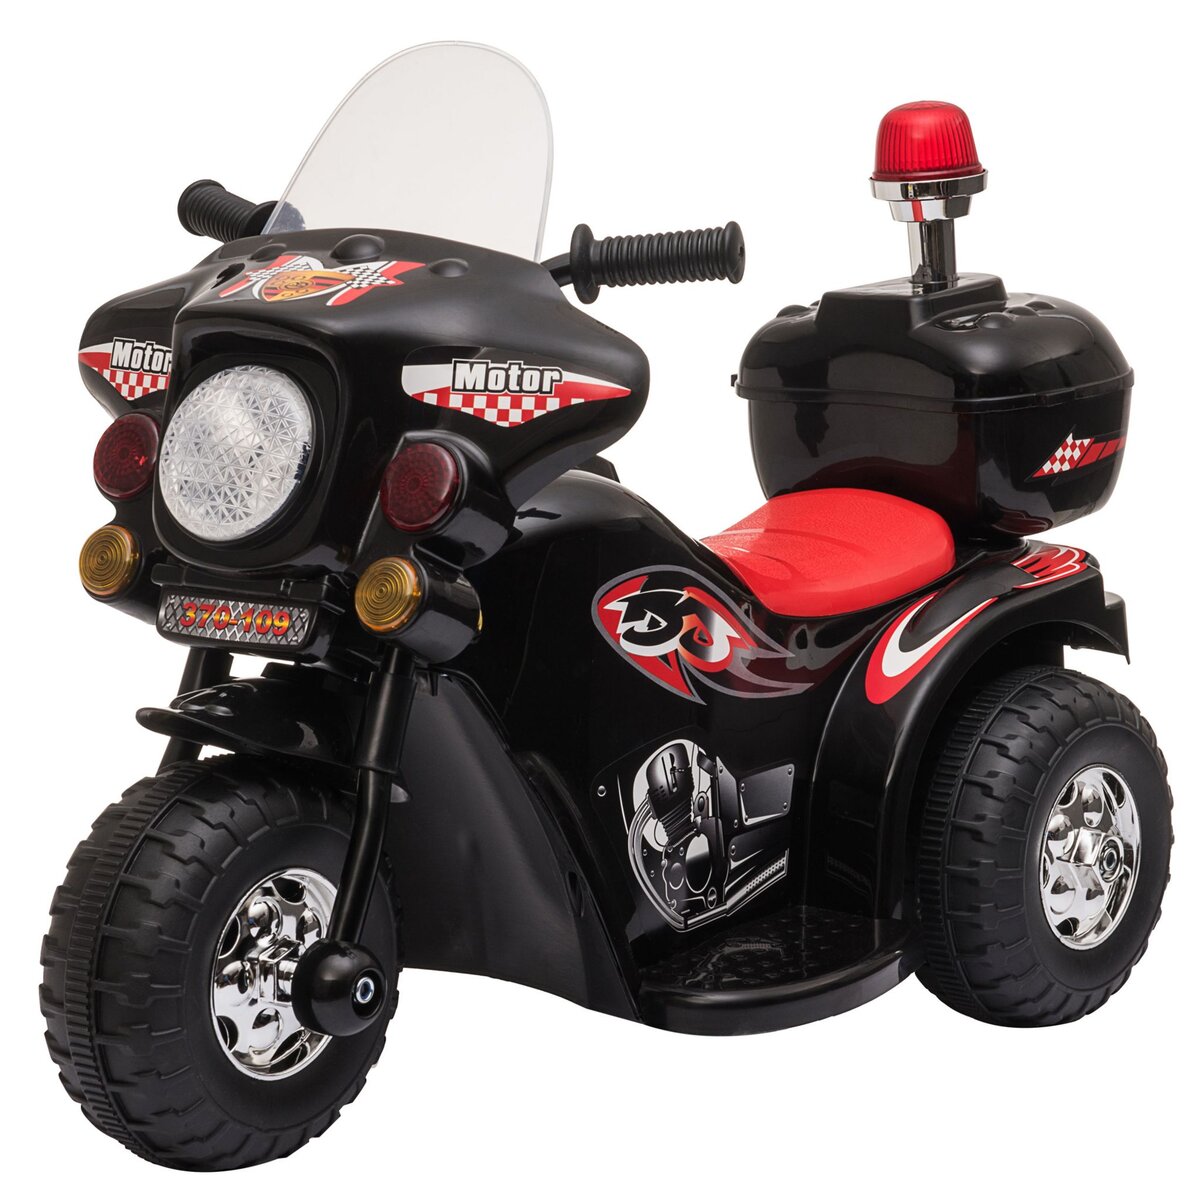 HOMCOM Moto scooter électrique pour enfants modèle policier 6 V 3 Km/h fonctions lumineuses et sonores top case noir